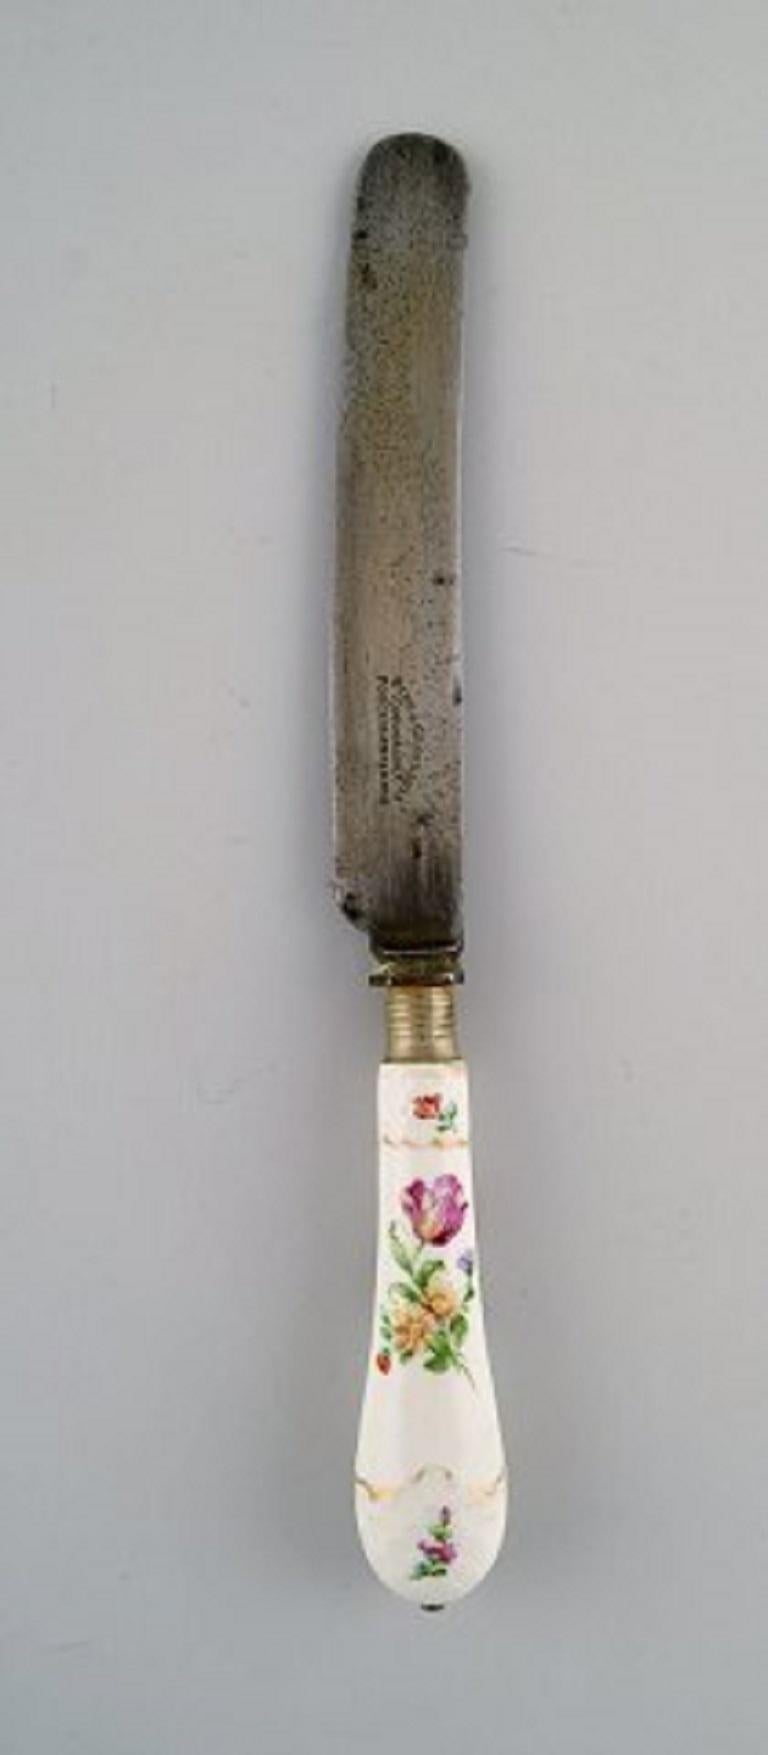 B & G, Bing & Grøndahl Sächsische Blume. Satz von 8 antiken großen Tafelmessern.
1. Fabrikqualität. In sehr gutem Zustand.
Frühe Briefmarke, um 1900.
Maße: 27,5 cm.